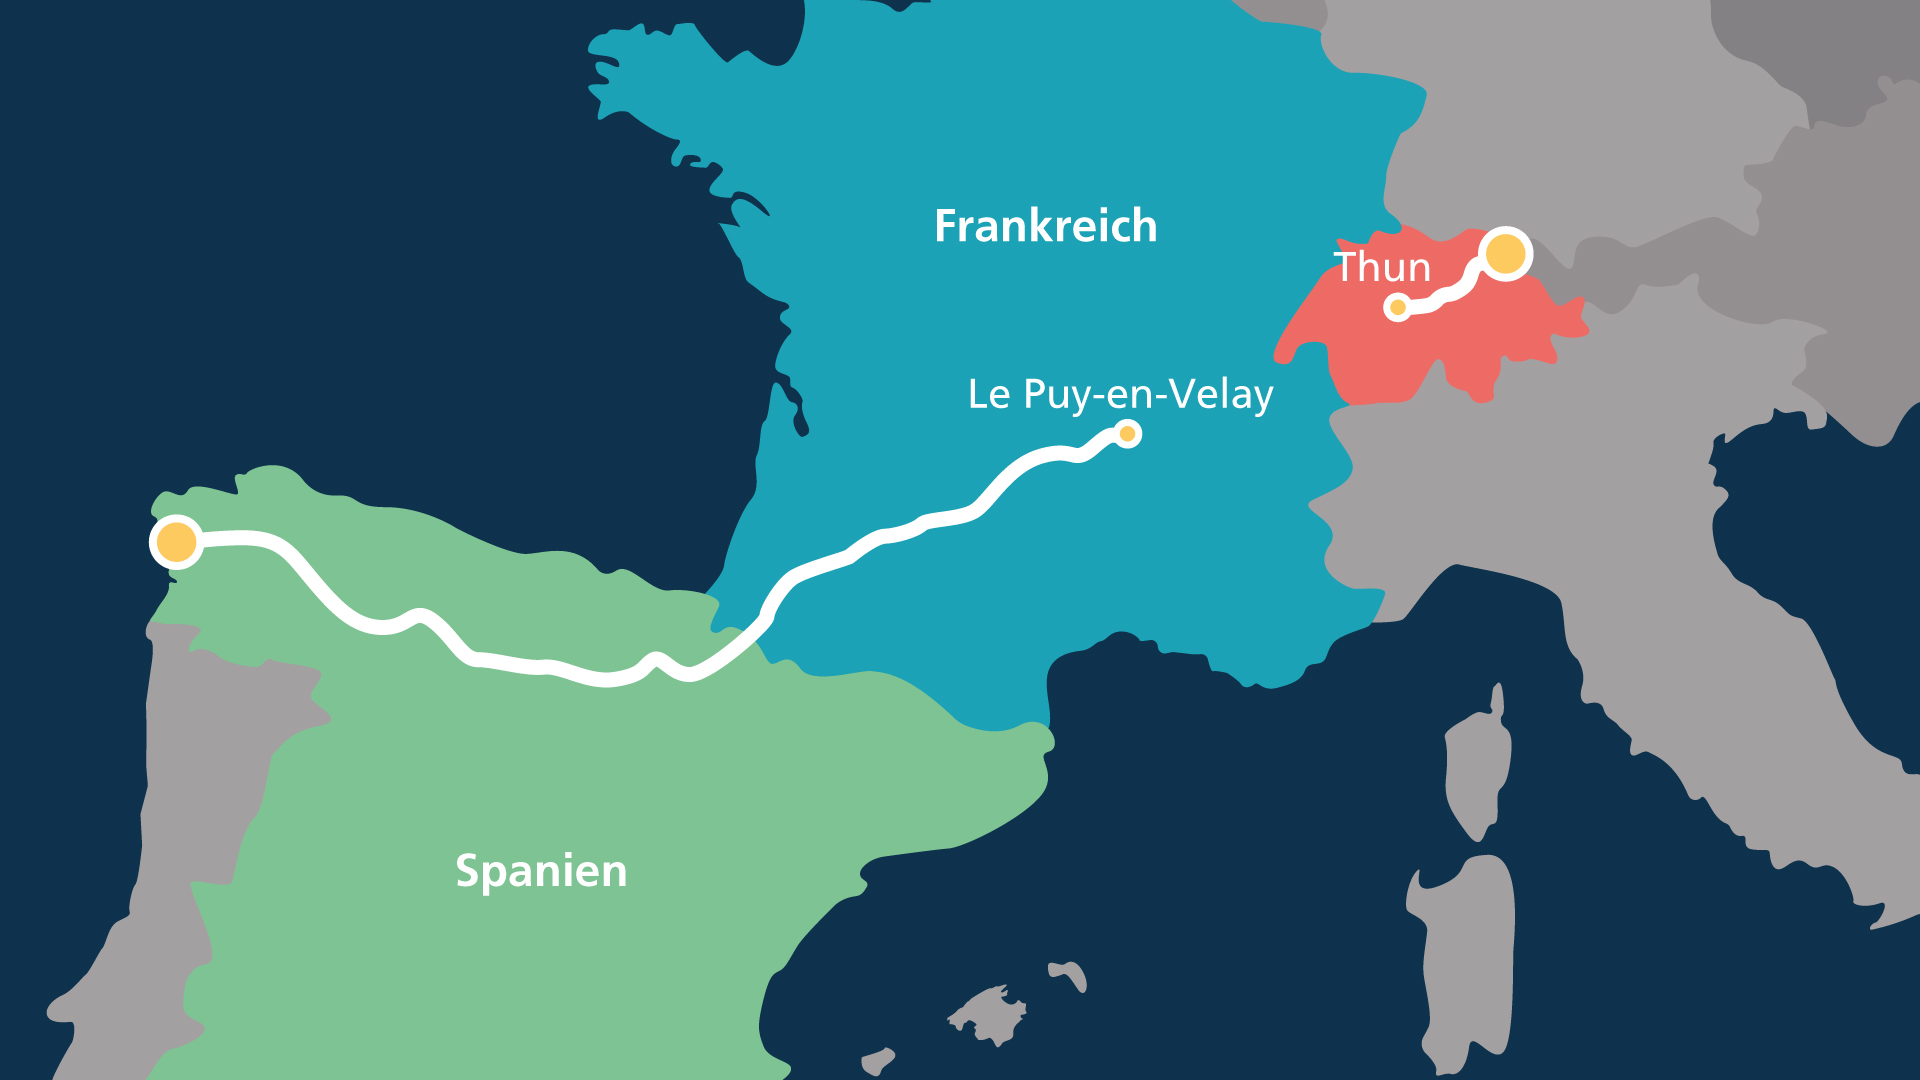 Landkarte mit eingezeichneter Route von der Schweiz via Frankreich nach Spanien.